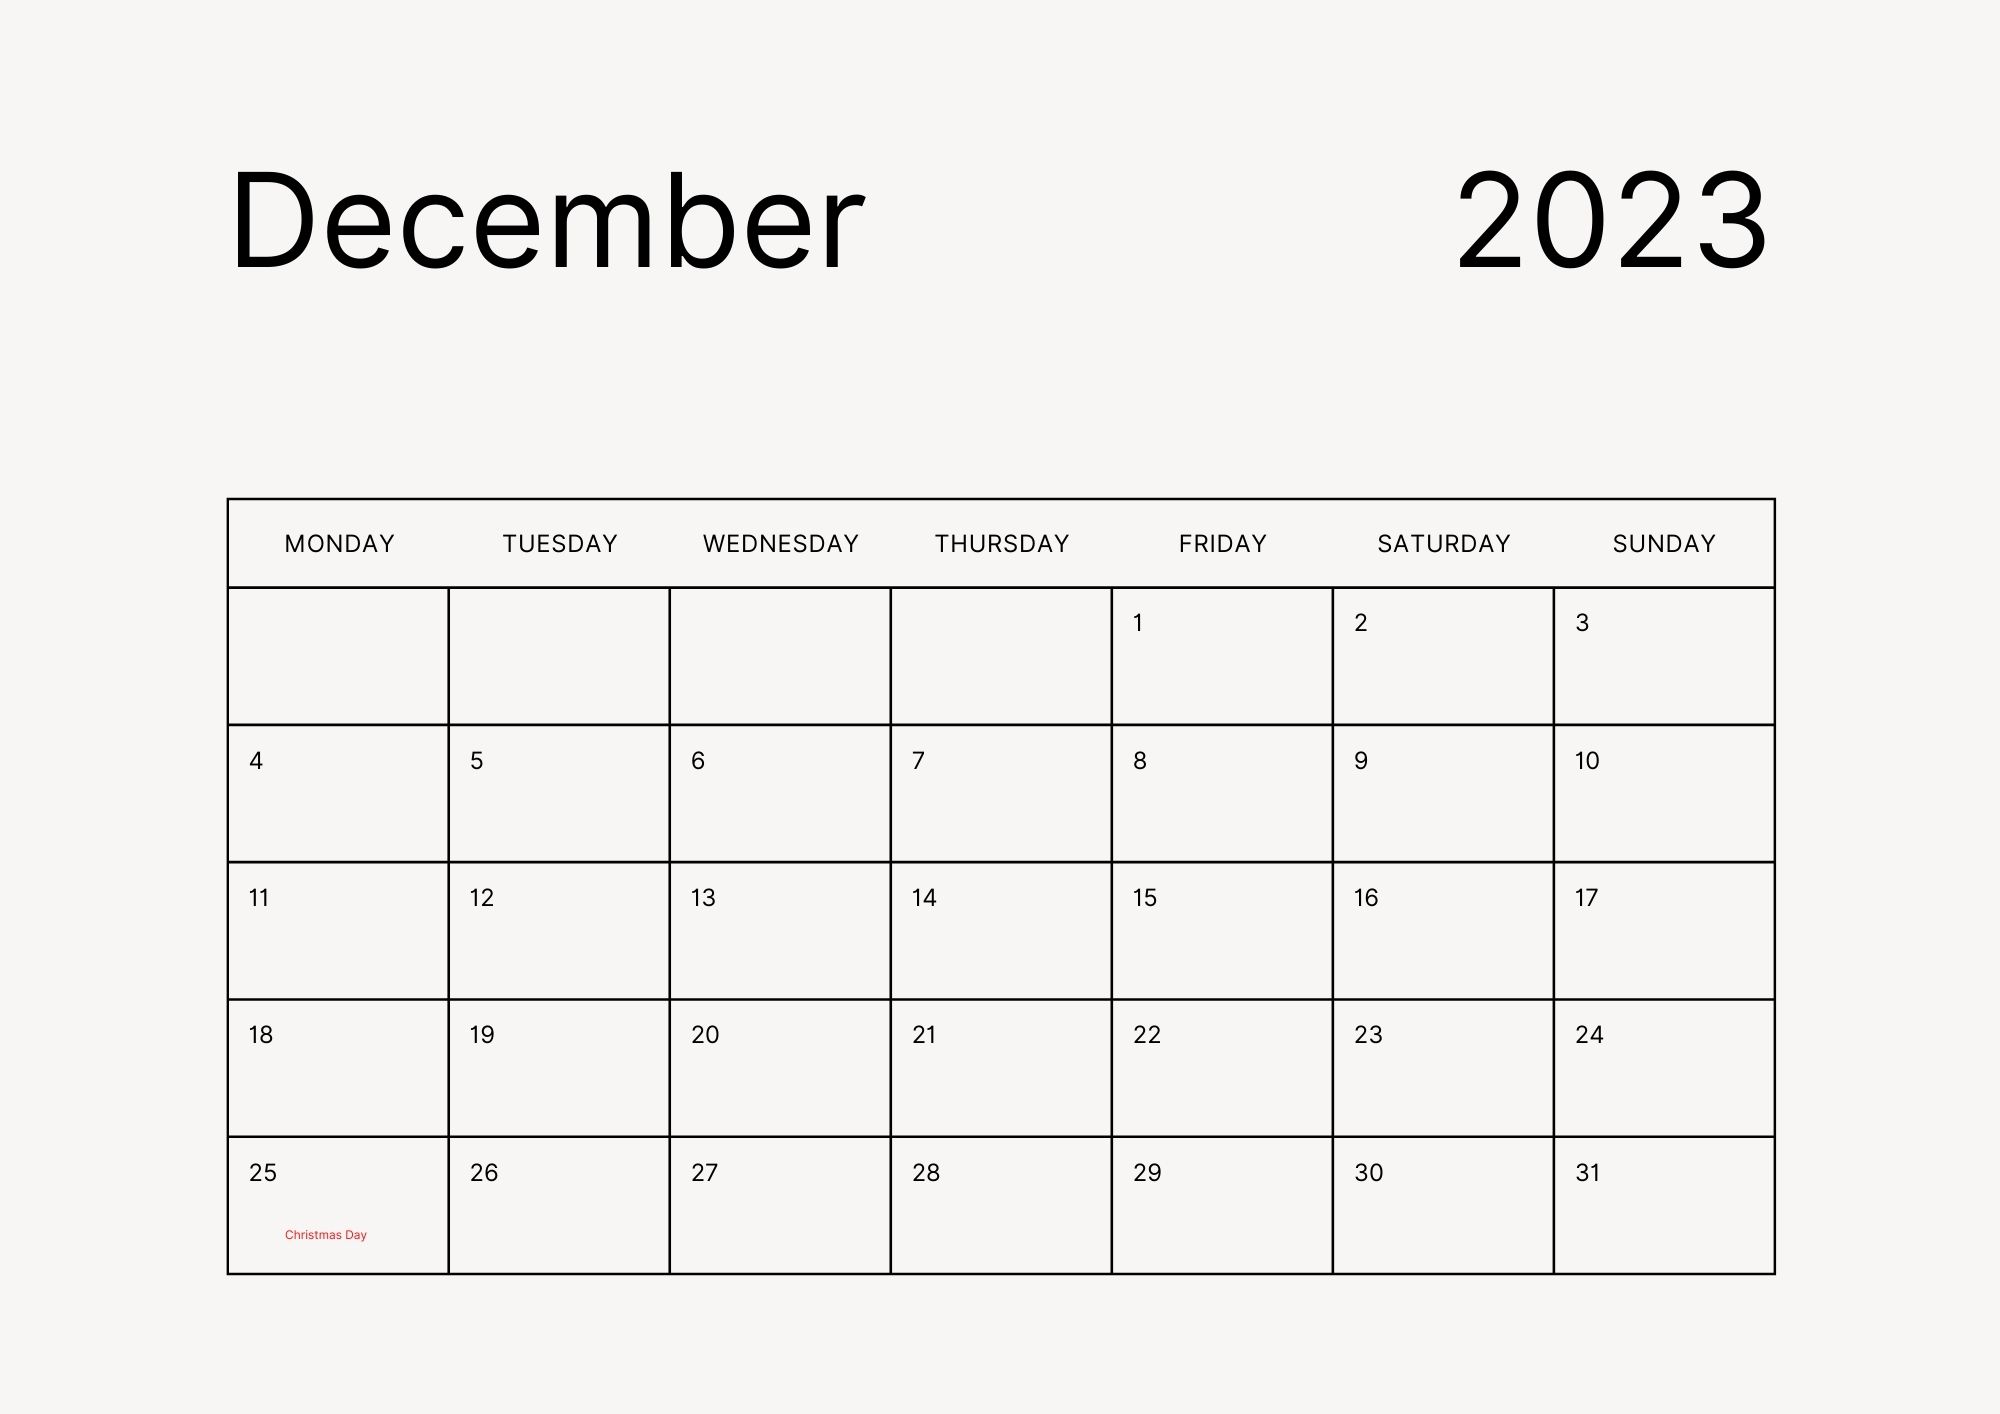 December Holidays 2023